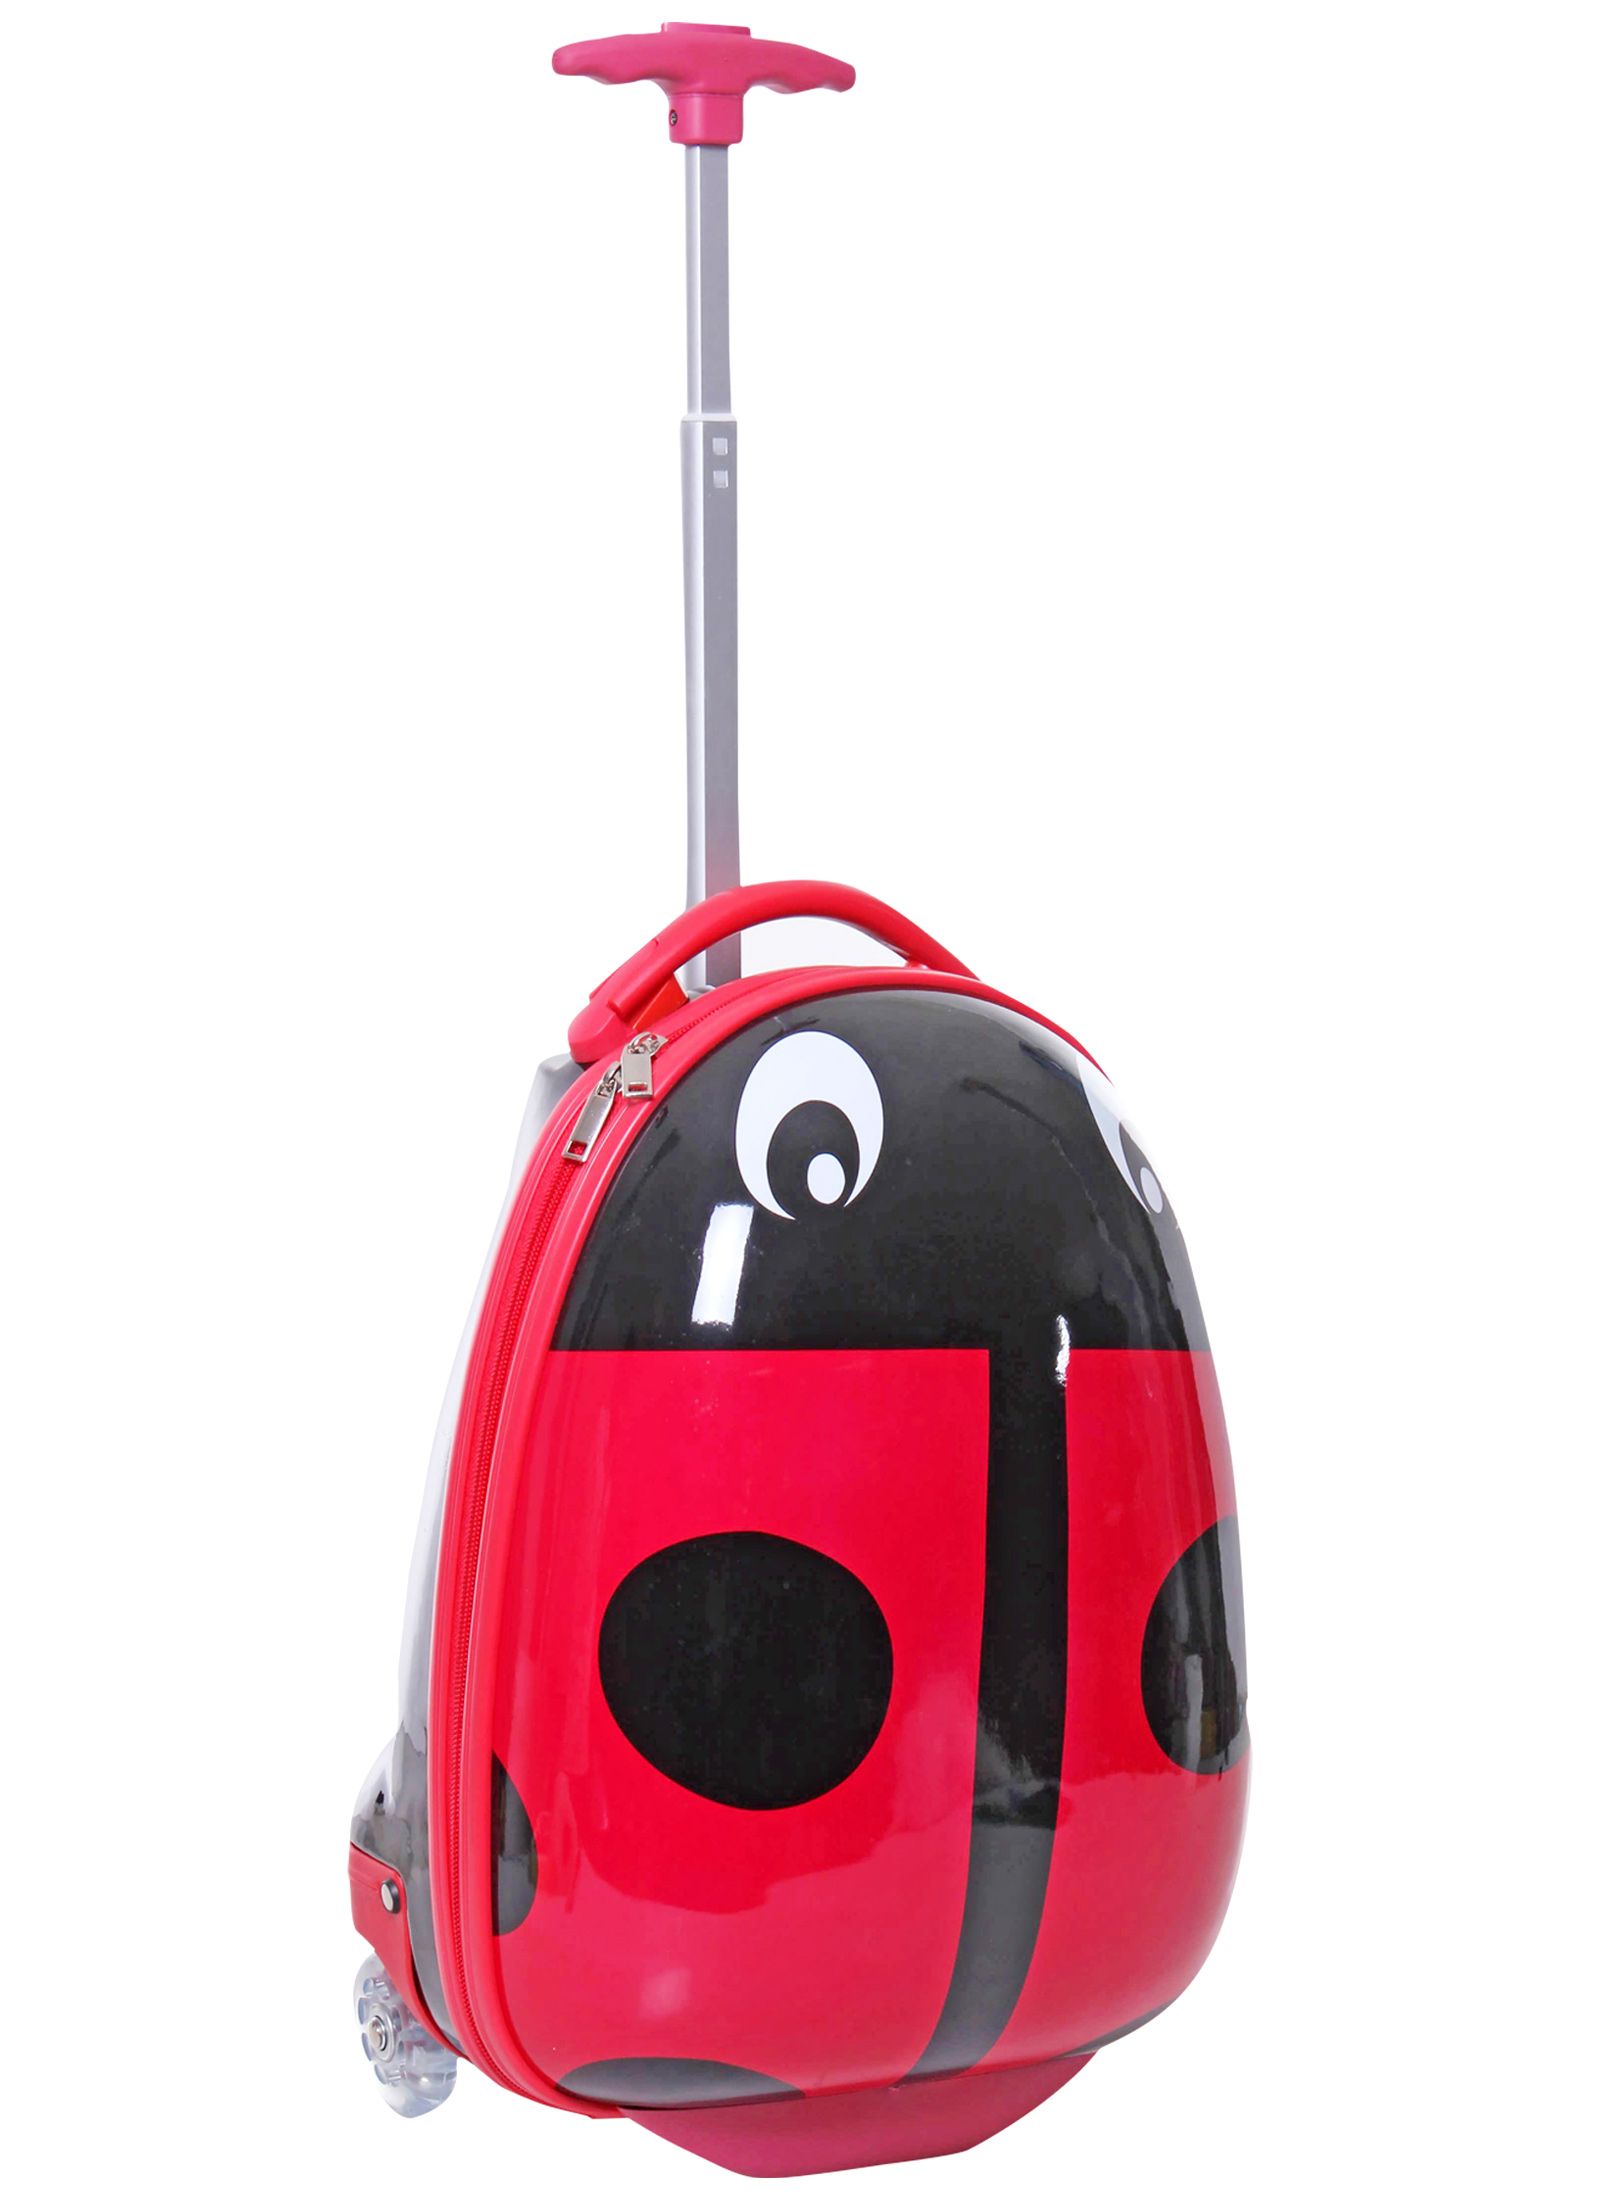 Travel Luggage Bag - Ladybug